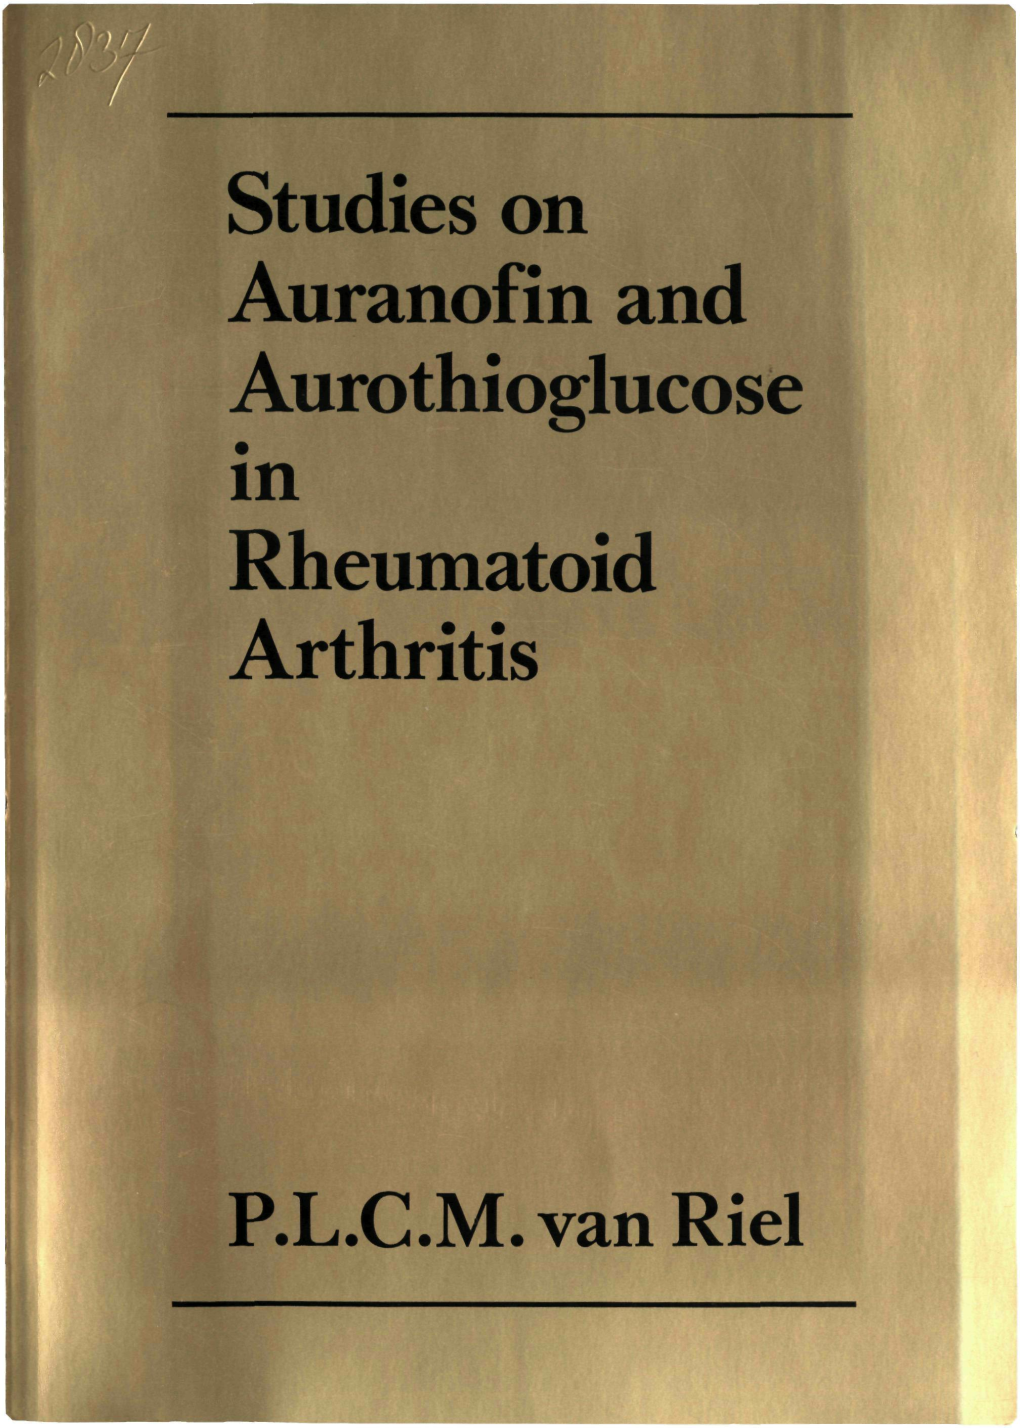 Studies on Auranofin and Aurothioglucose in Rheumatoid Arthritis